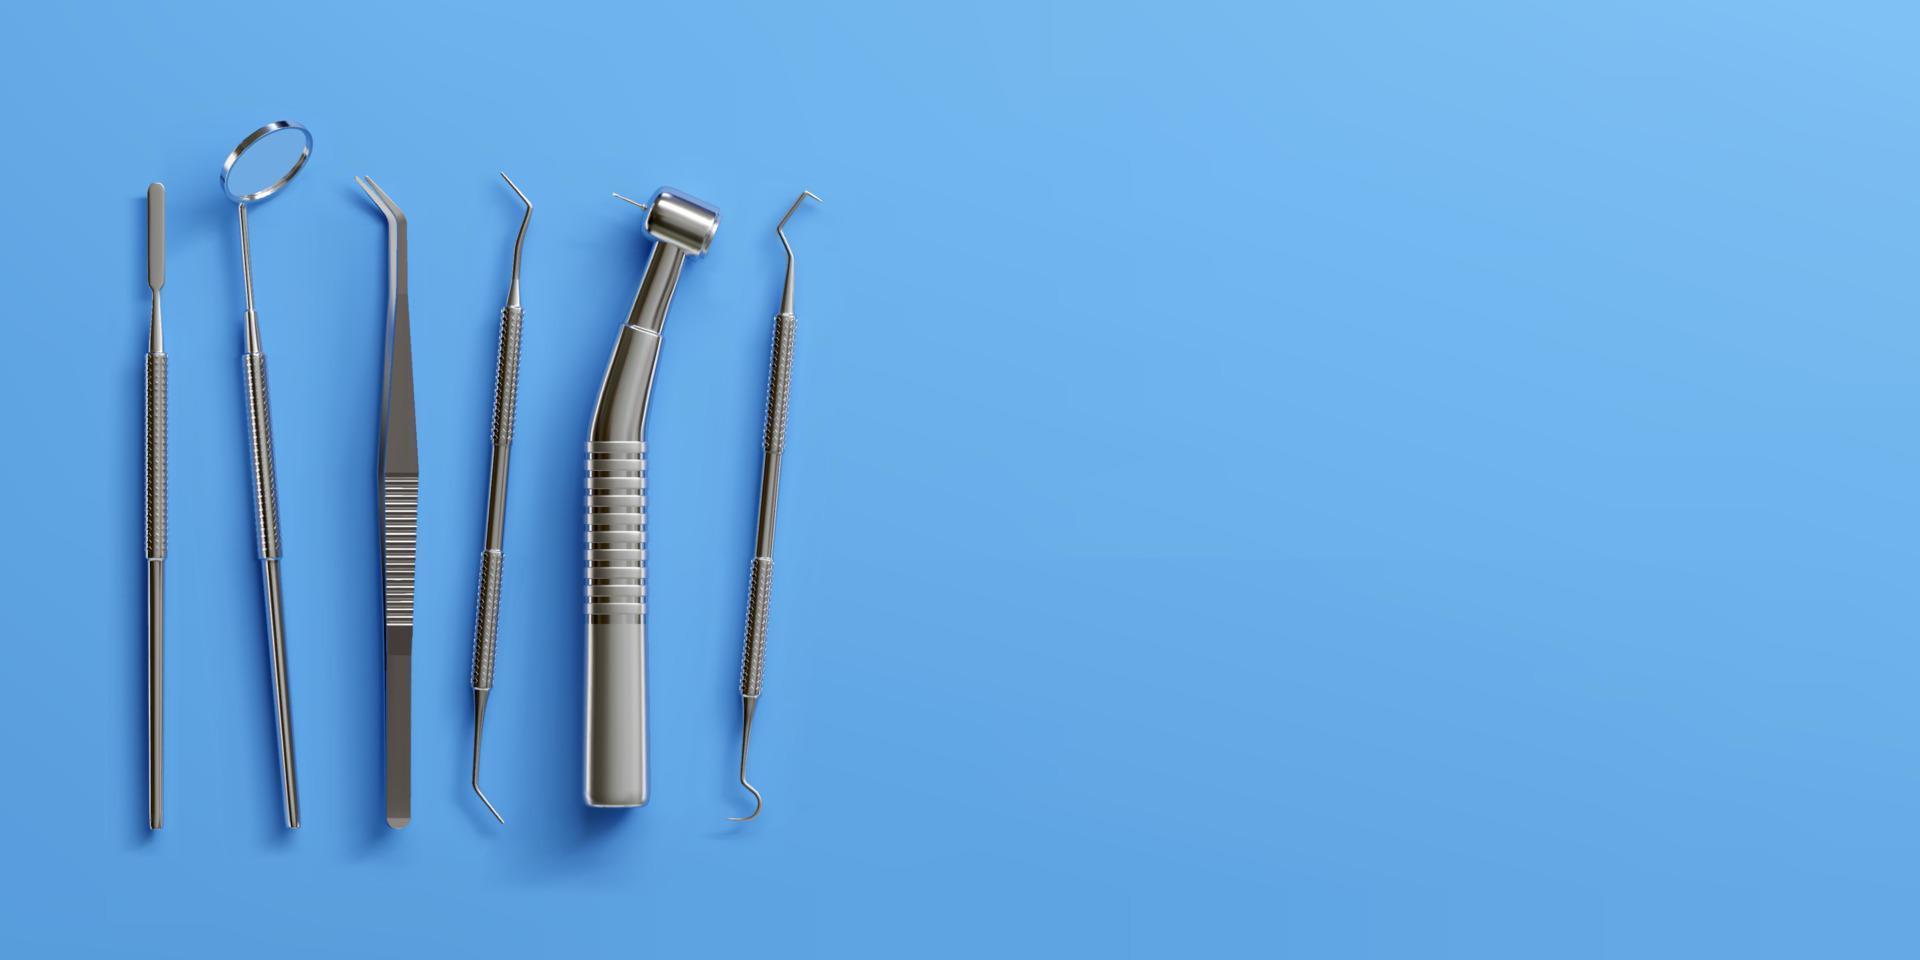 Ensemble d'outils dentaires professionnels réalistes 3d pour l'inspection dentaire. soins des dents, concept de santé. équipement médical de base en métal, vue de dessus d'instrument. illustration vectorielle isolée sur fond bleu vecteur